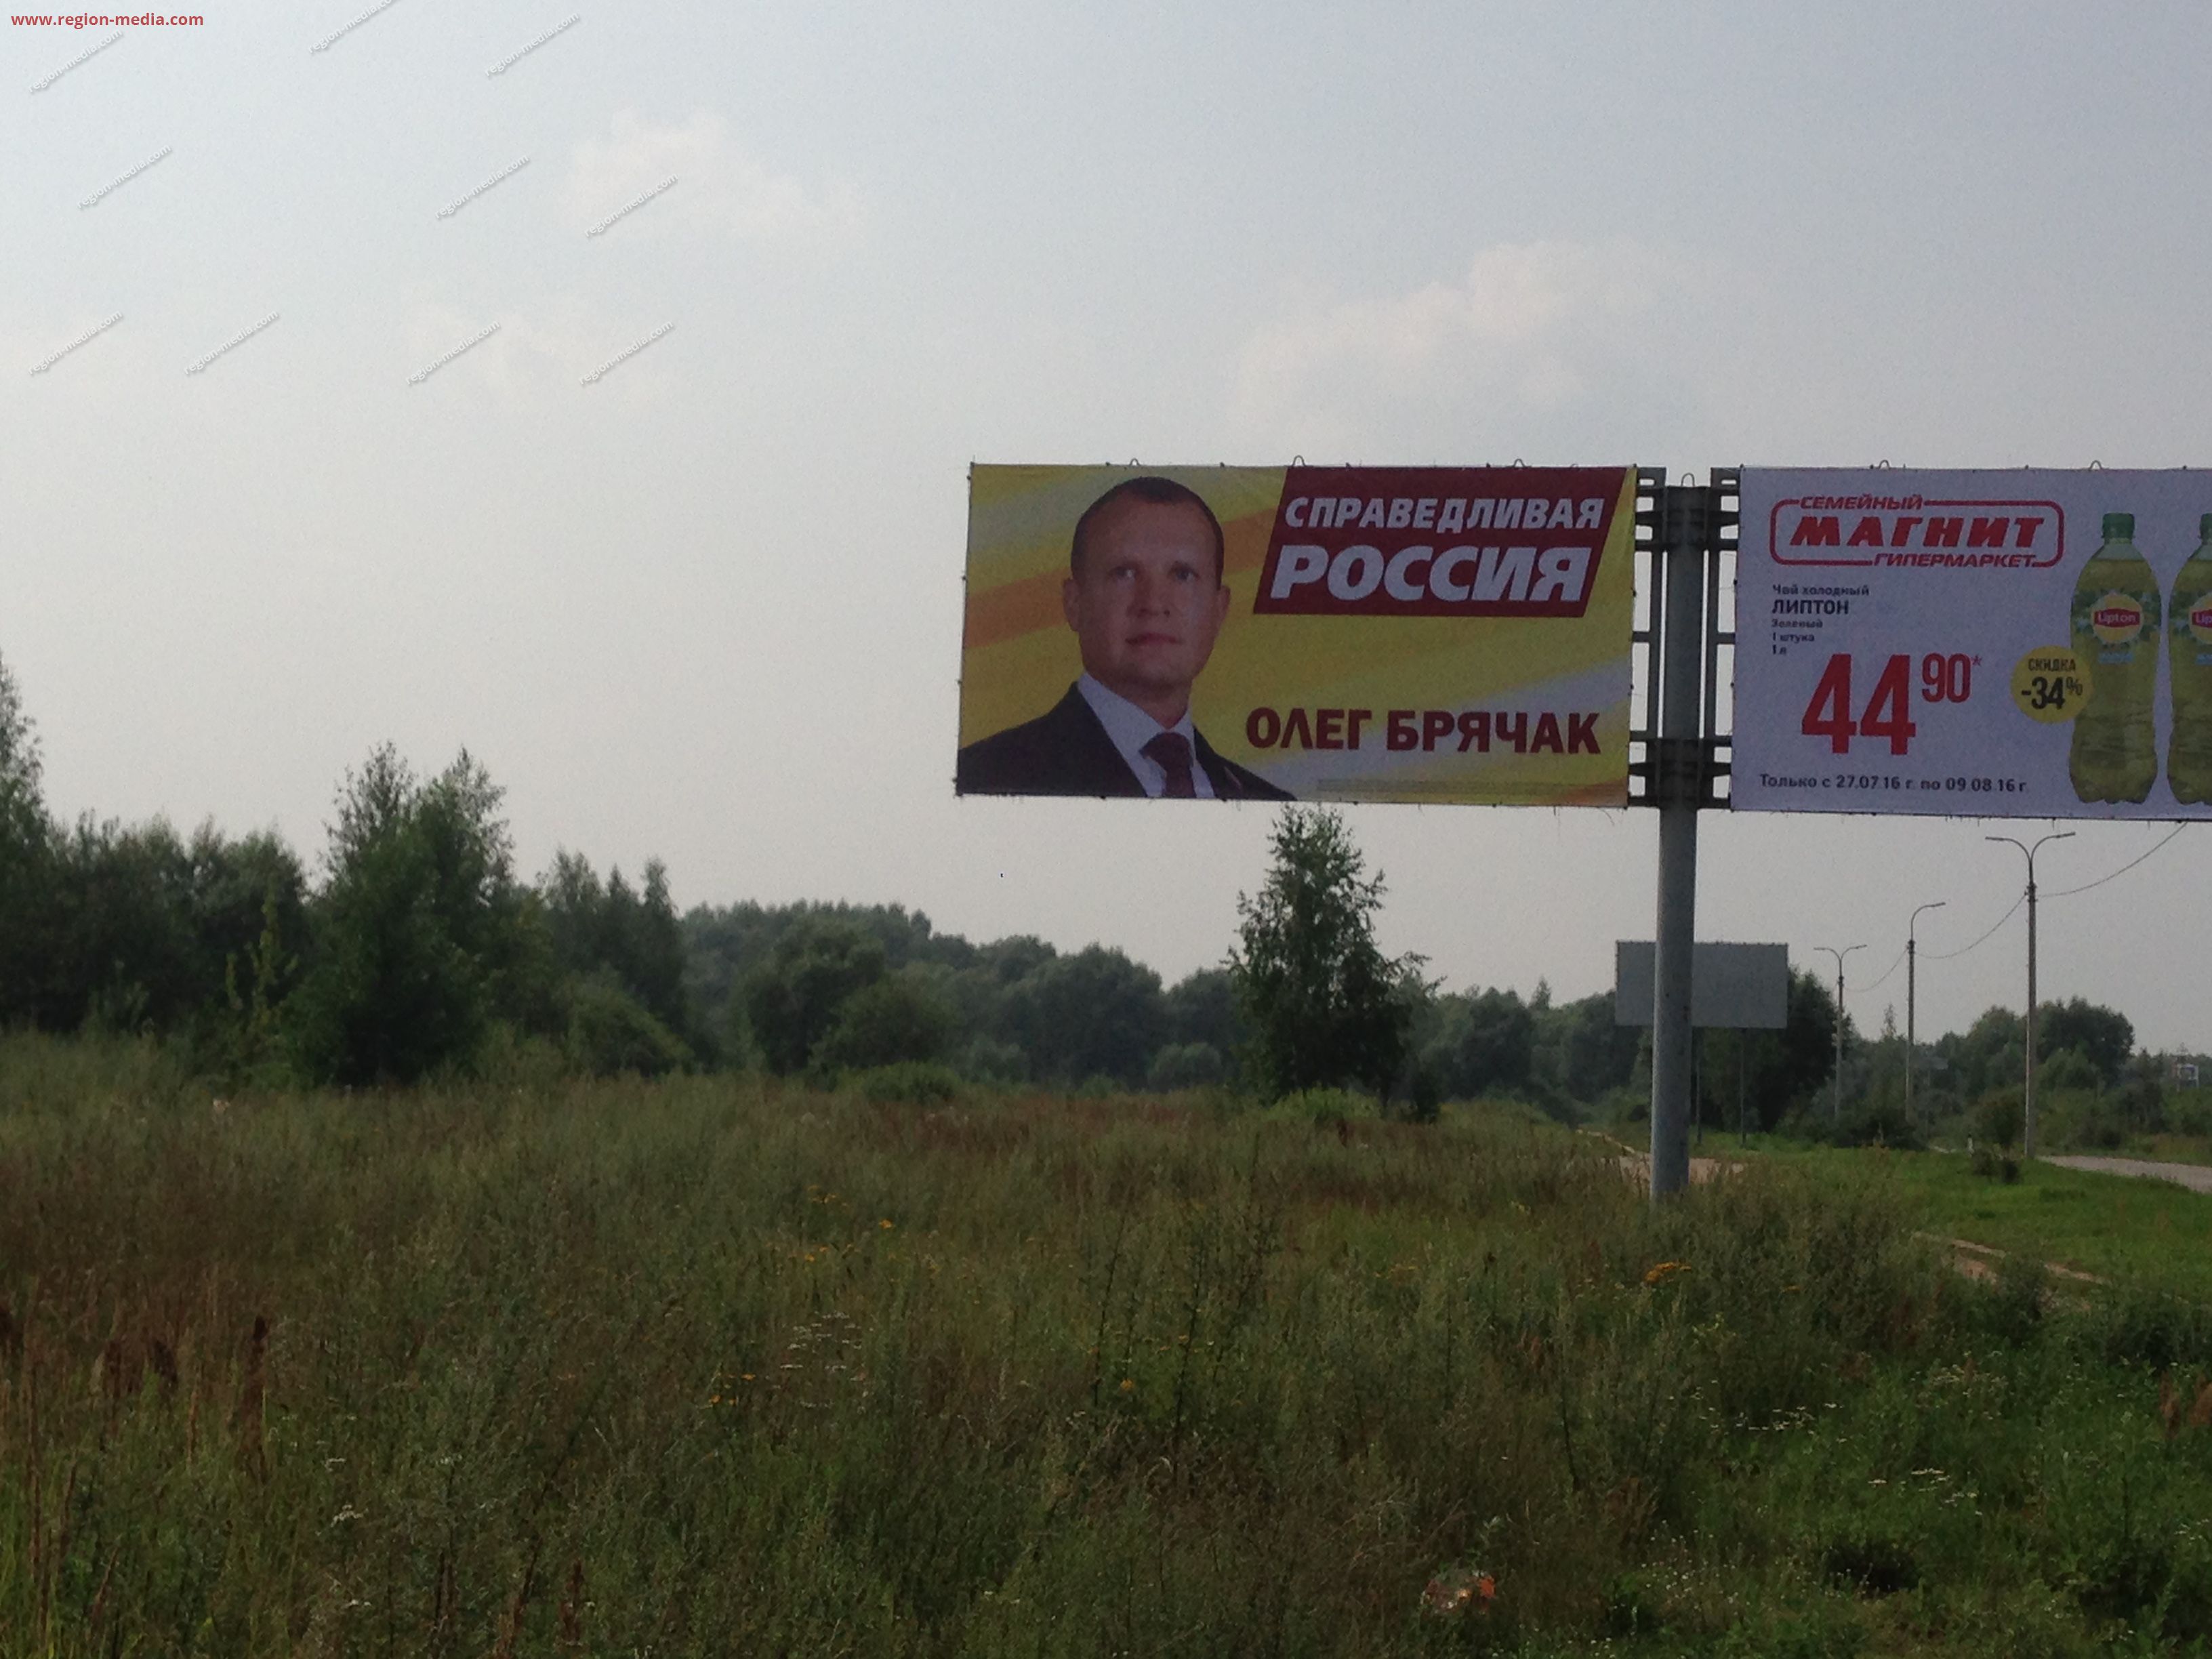 Размещение рекламы  партии "Справедливая Россия" на щитах 3х6 в городе Ставрополь